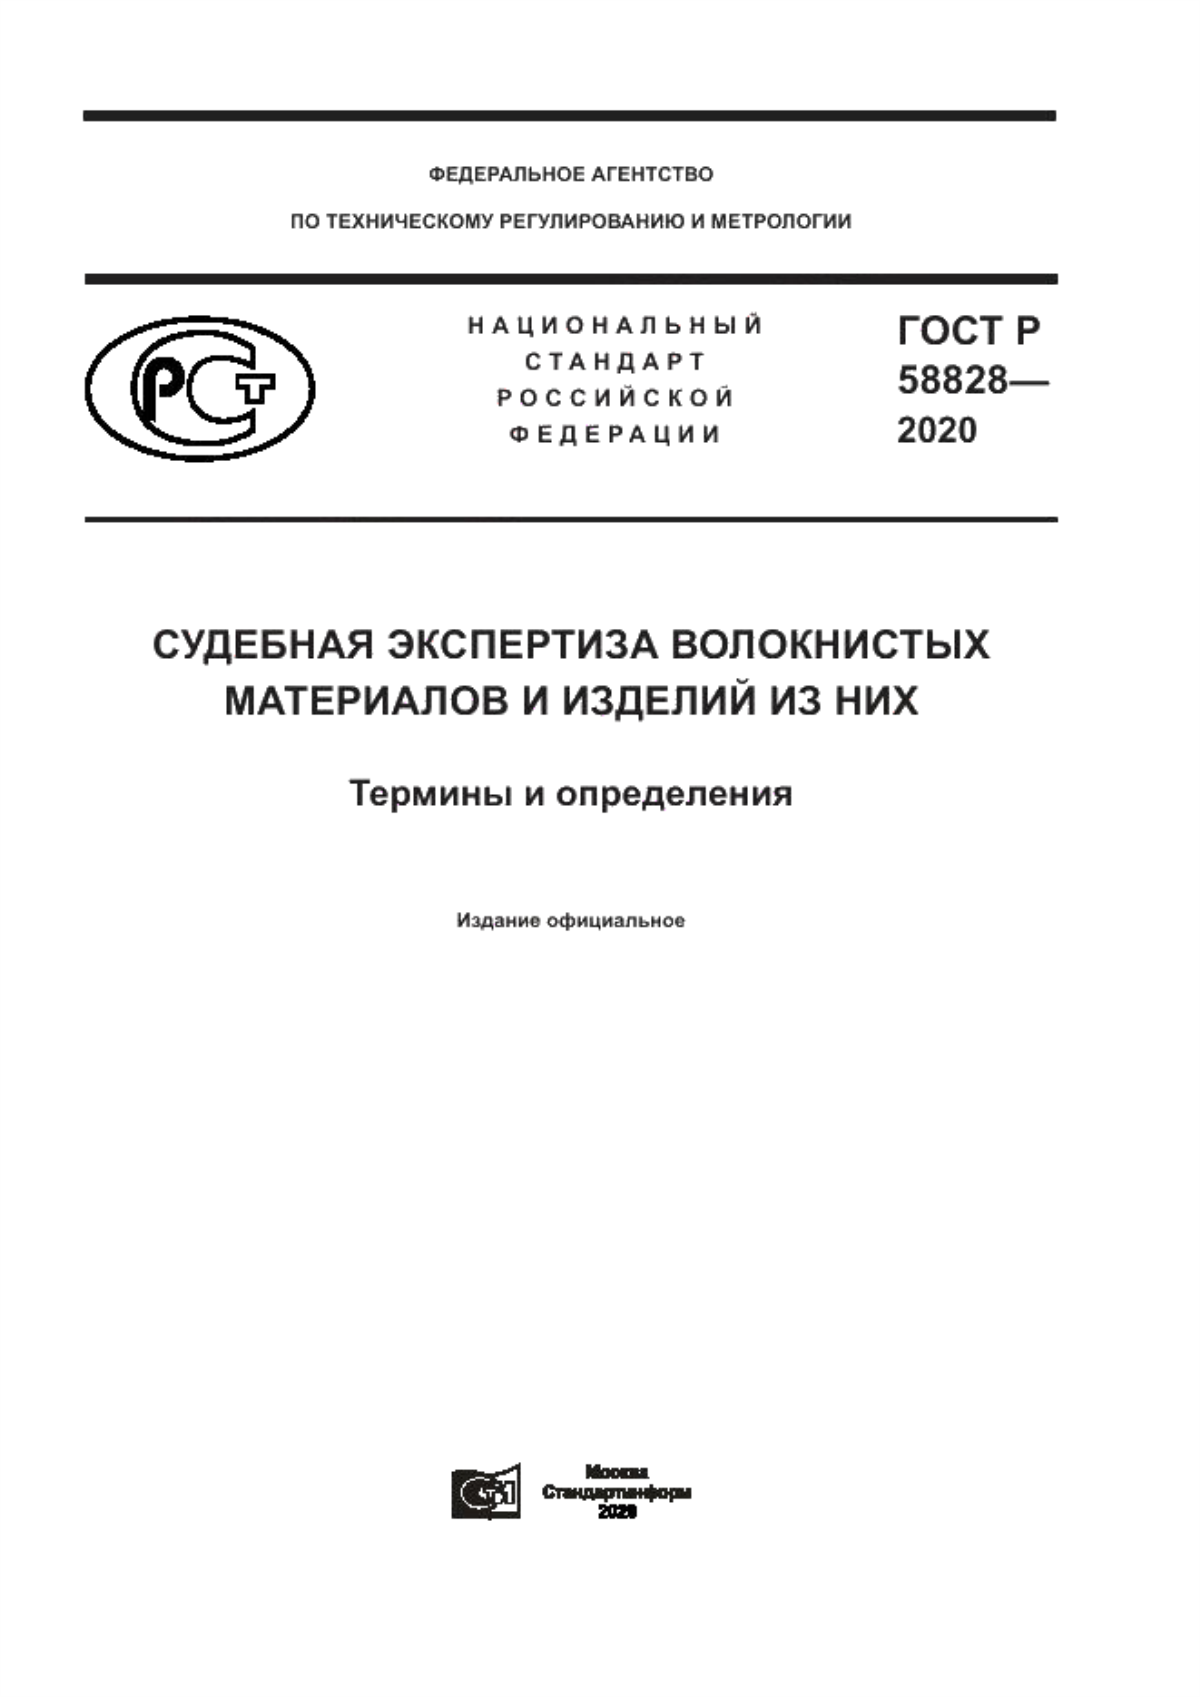 ГОСТ Р 58828-2020 Судебная экспертиза волокнистых материалов и изделий из них. Термины и определения